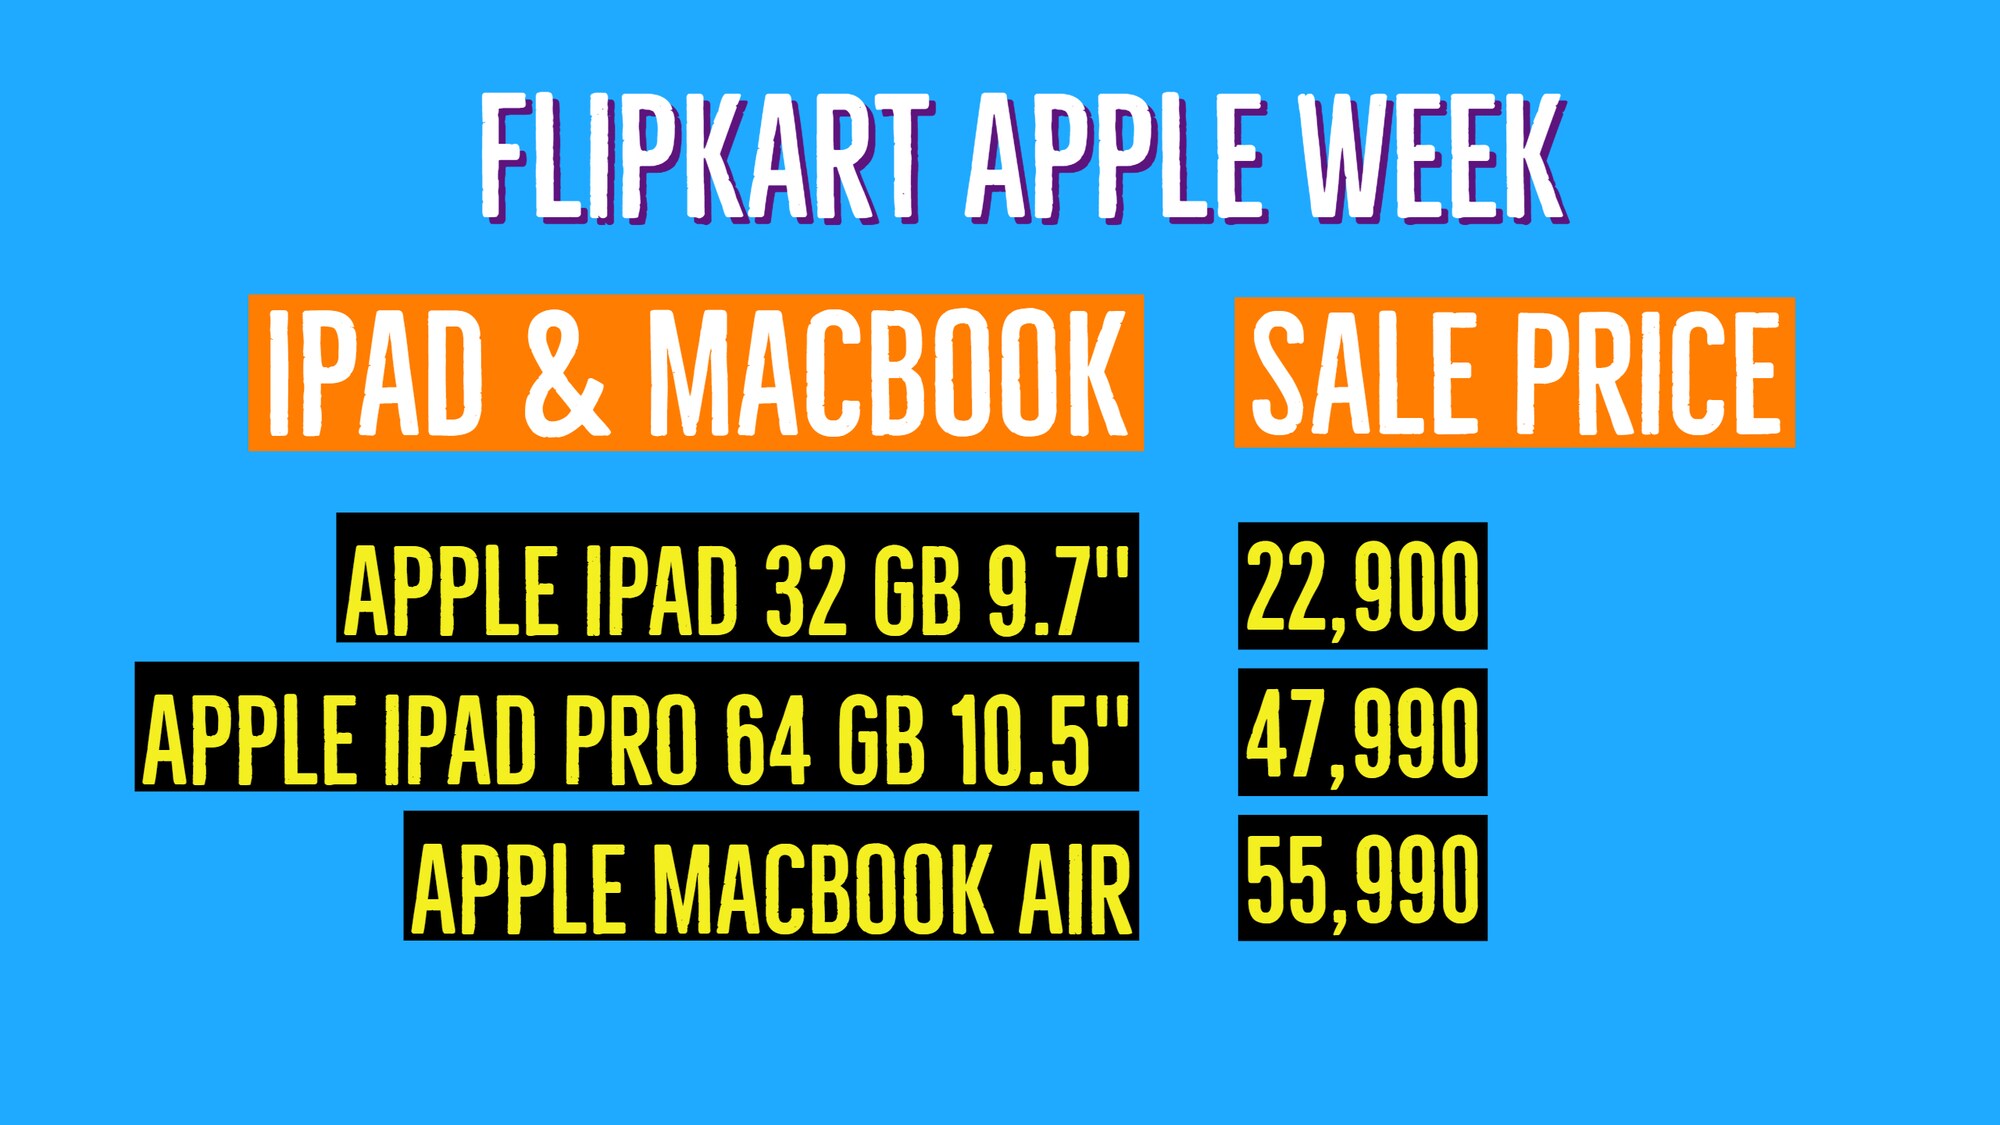 Flipkart Apple Week, Discounts on iPads and Macbook